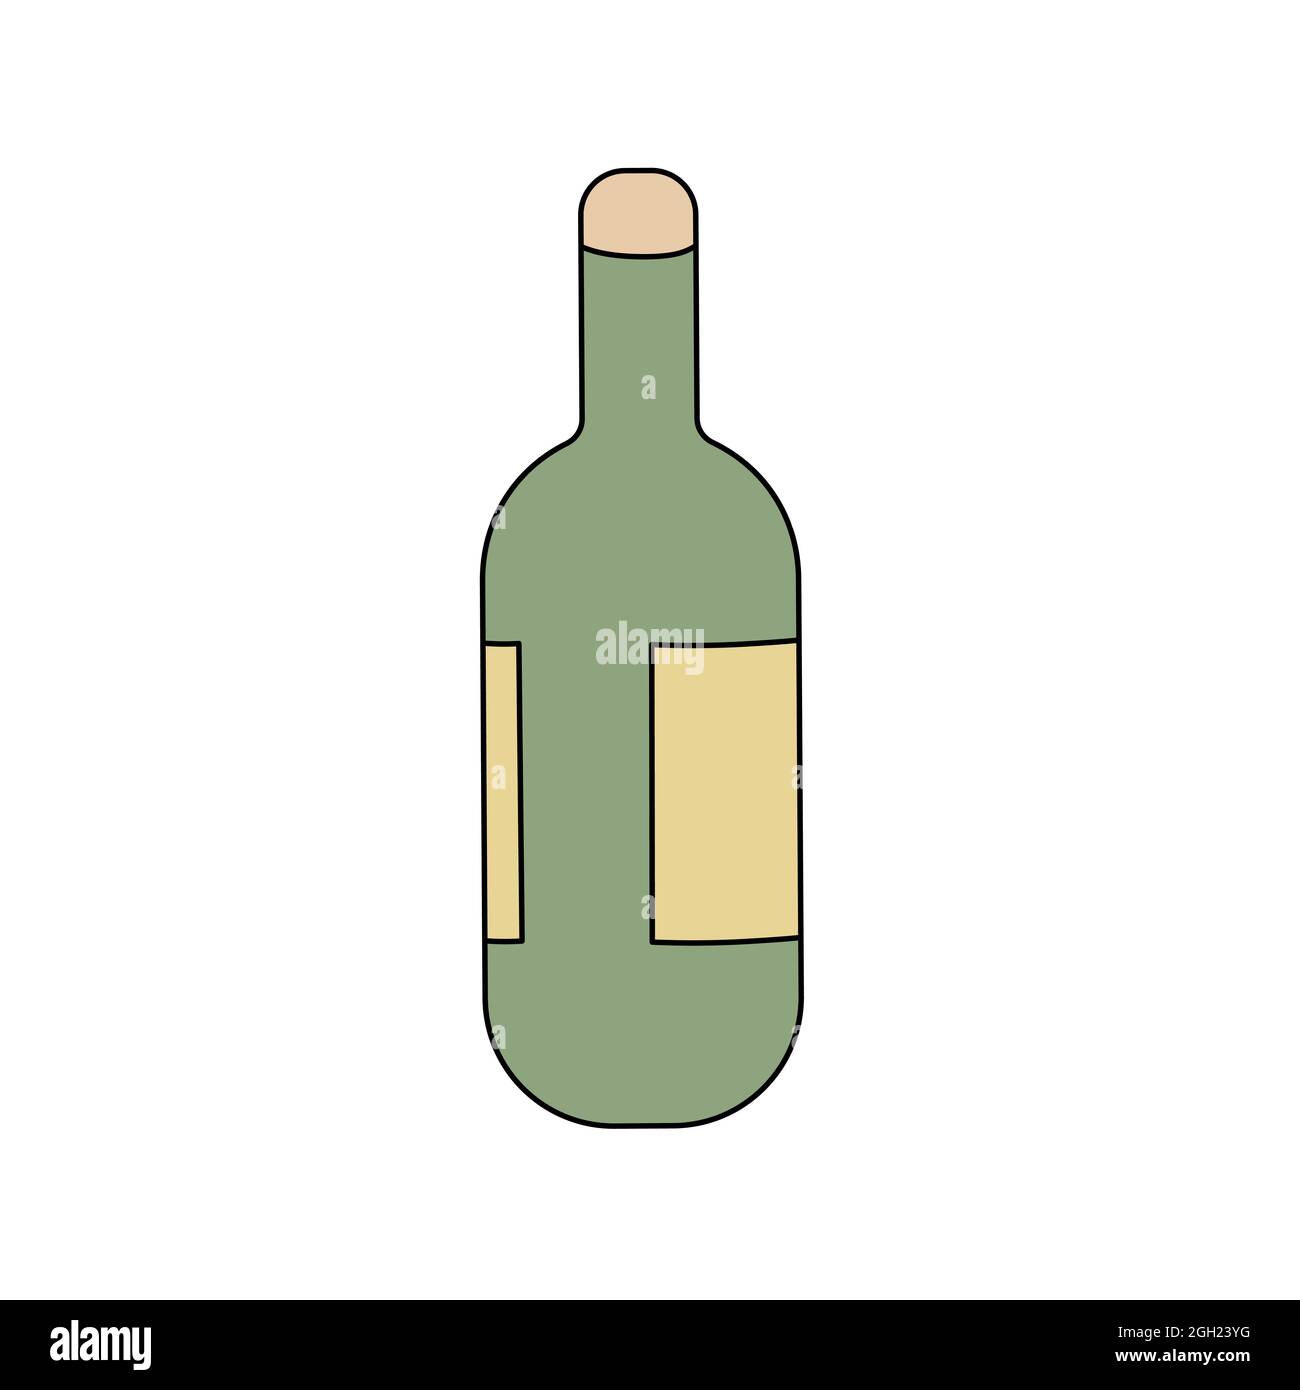 Jolie bouteille de champagne ou de vin dans le style de la caniche.  Illustration vectorielle isolée sur fond blanc. Vin mousseux de dessin  animé en couleur Image Vectorielle Stock - Alamy